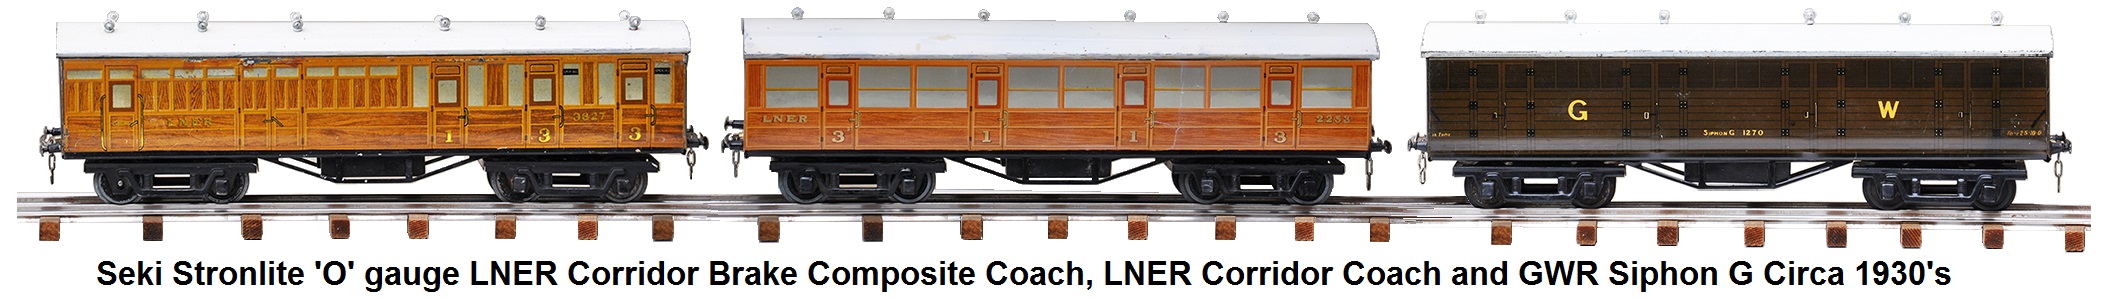 Seki Stronlite 'O' gauge LNER Corridor Brake Composite Coach, LNER Corridor Coach and GWR Siphon G circa 1930's